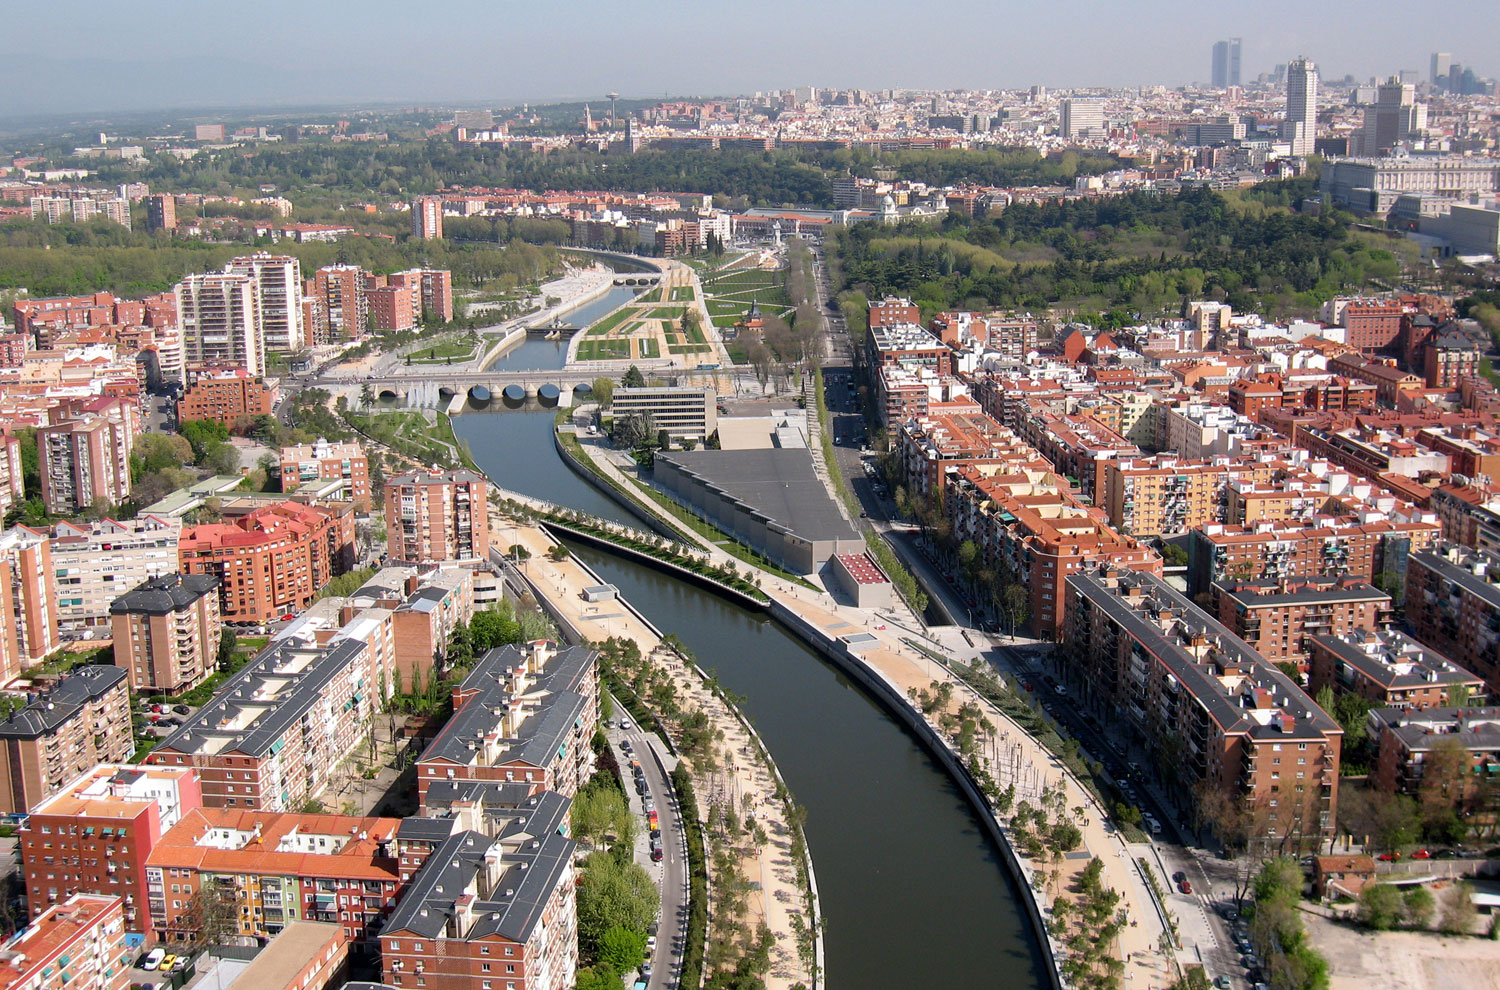 Madrid Río linear park